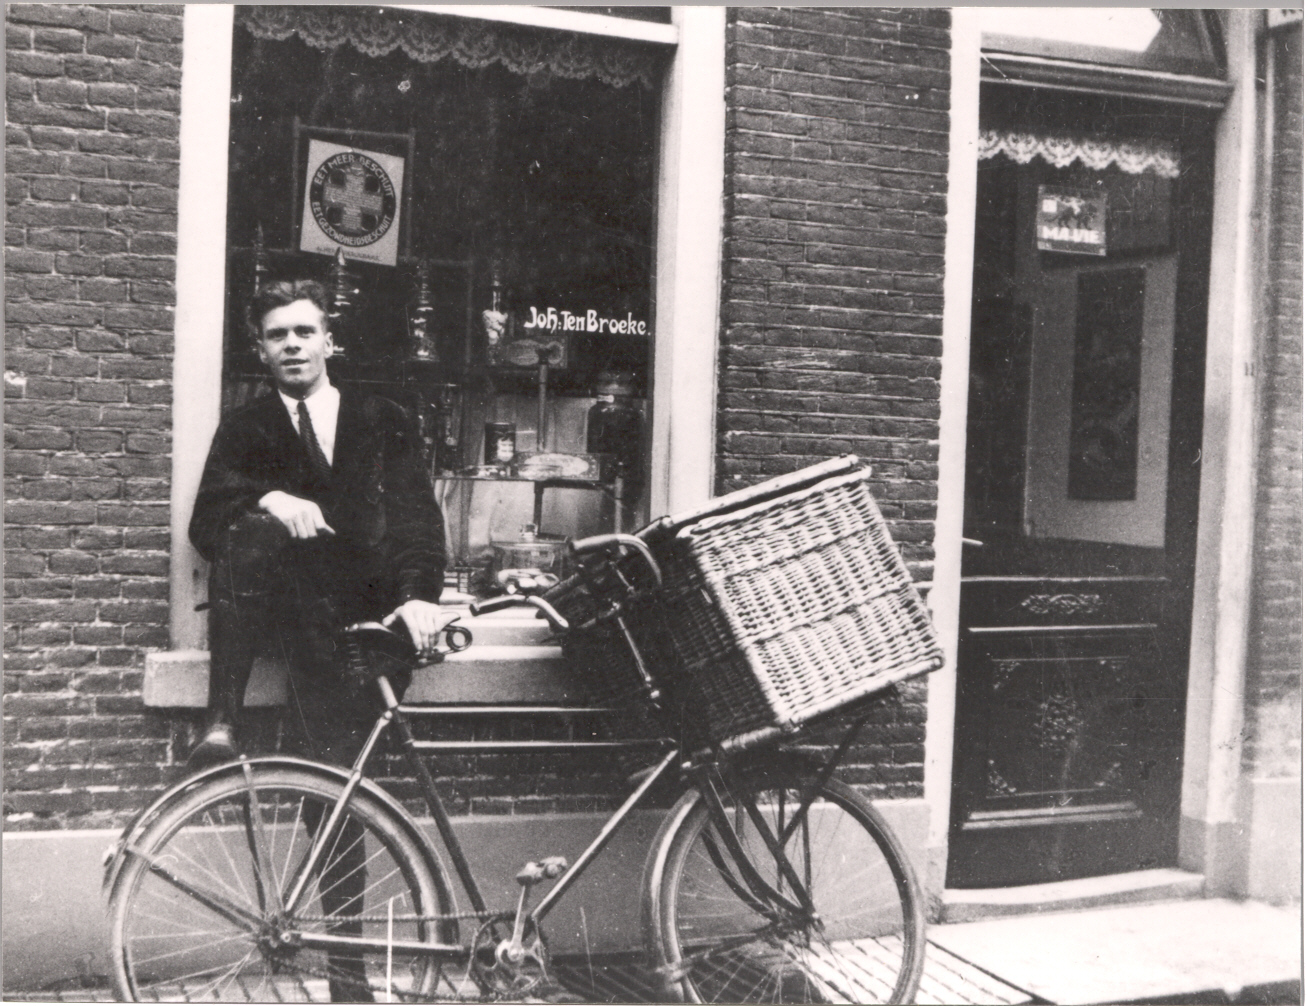 Gert ten Broeke met transportfiets voor winkel Joh. ten Broeke aan de Walderstraat 11 in Lochem, rond 1930. (foto HB00971, beeldcollectie Lochem, Laren, Lochem)